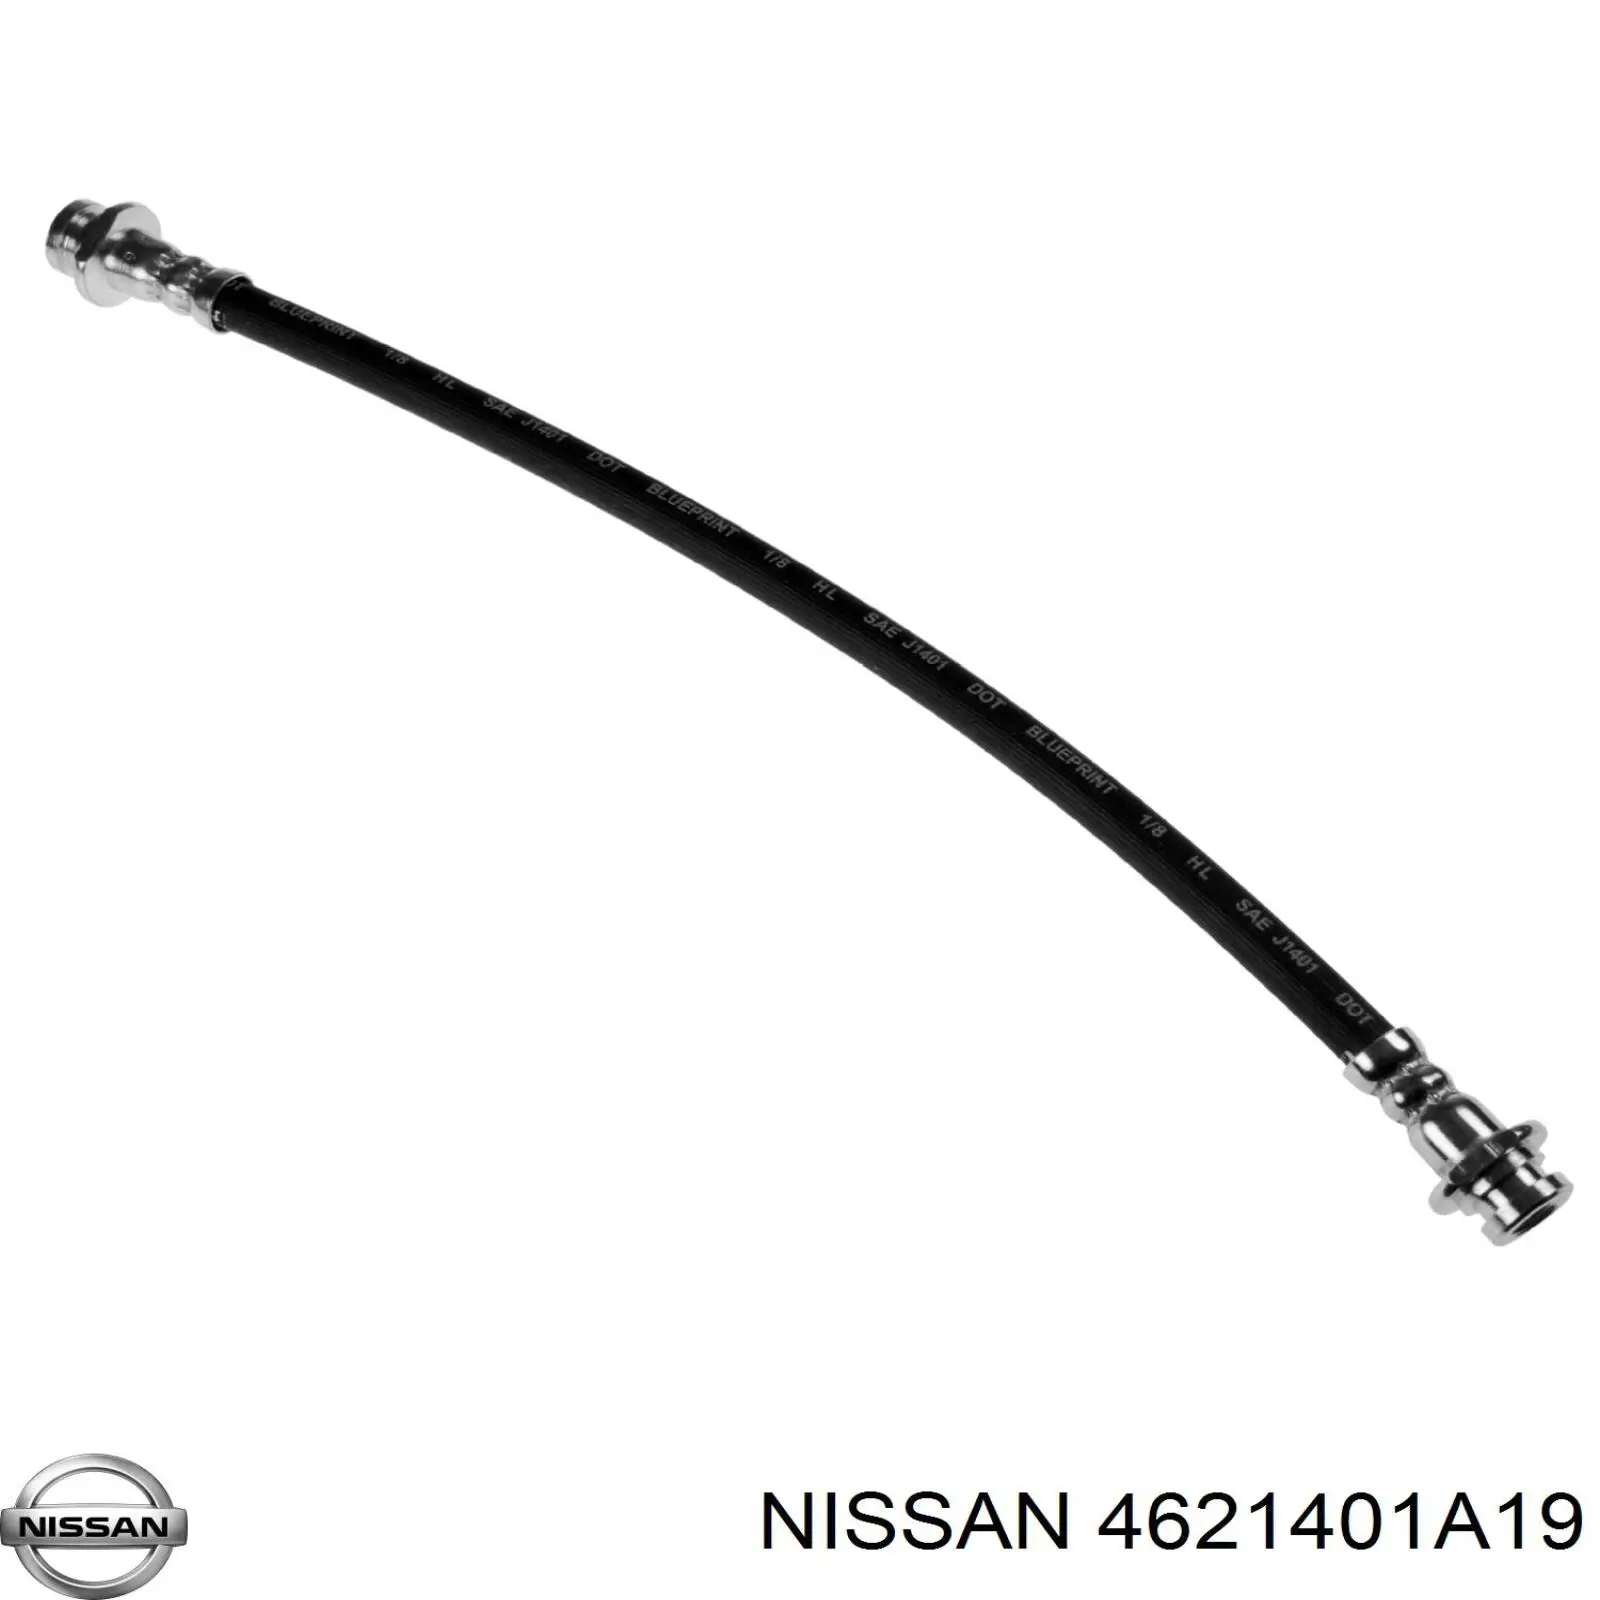 4621401A19 Nissan latiguillo de freno trasero